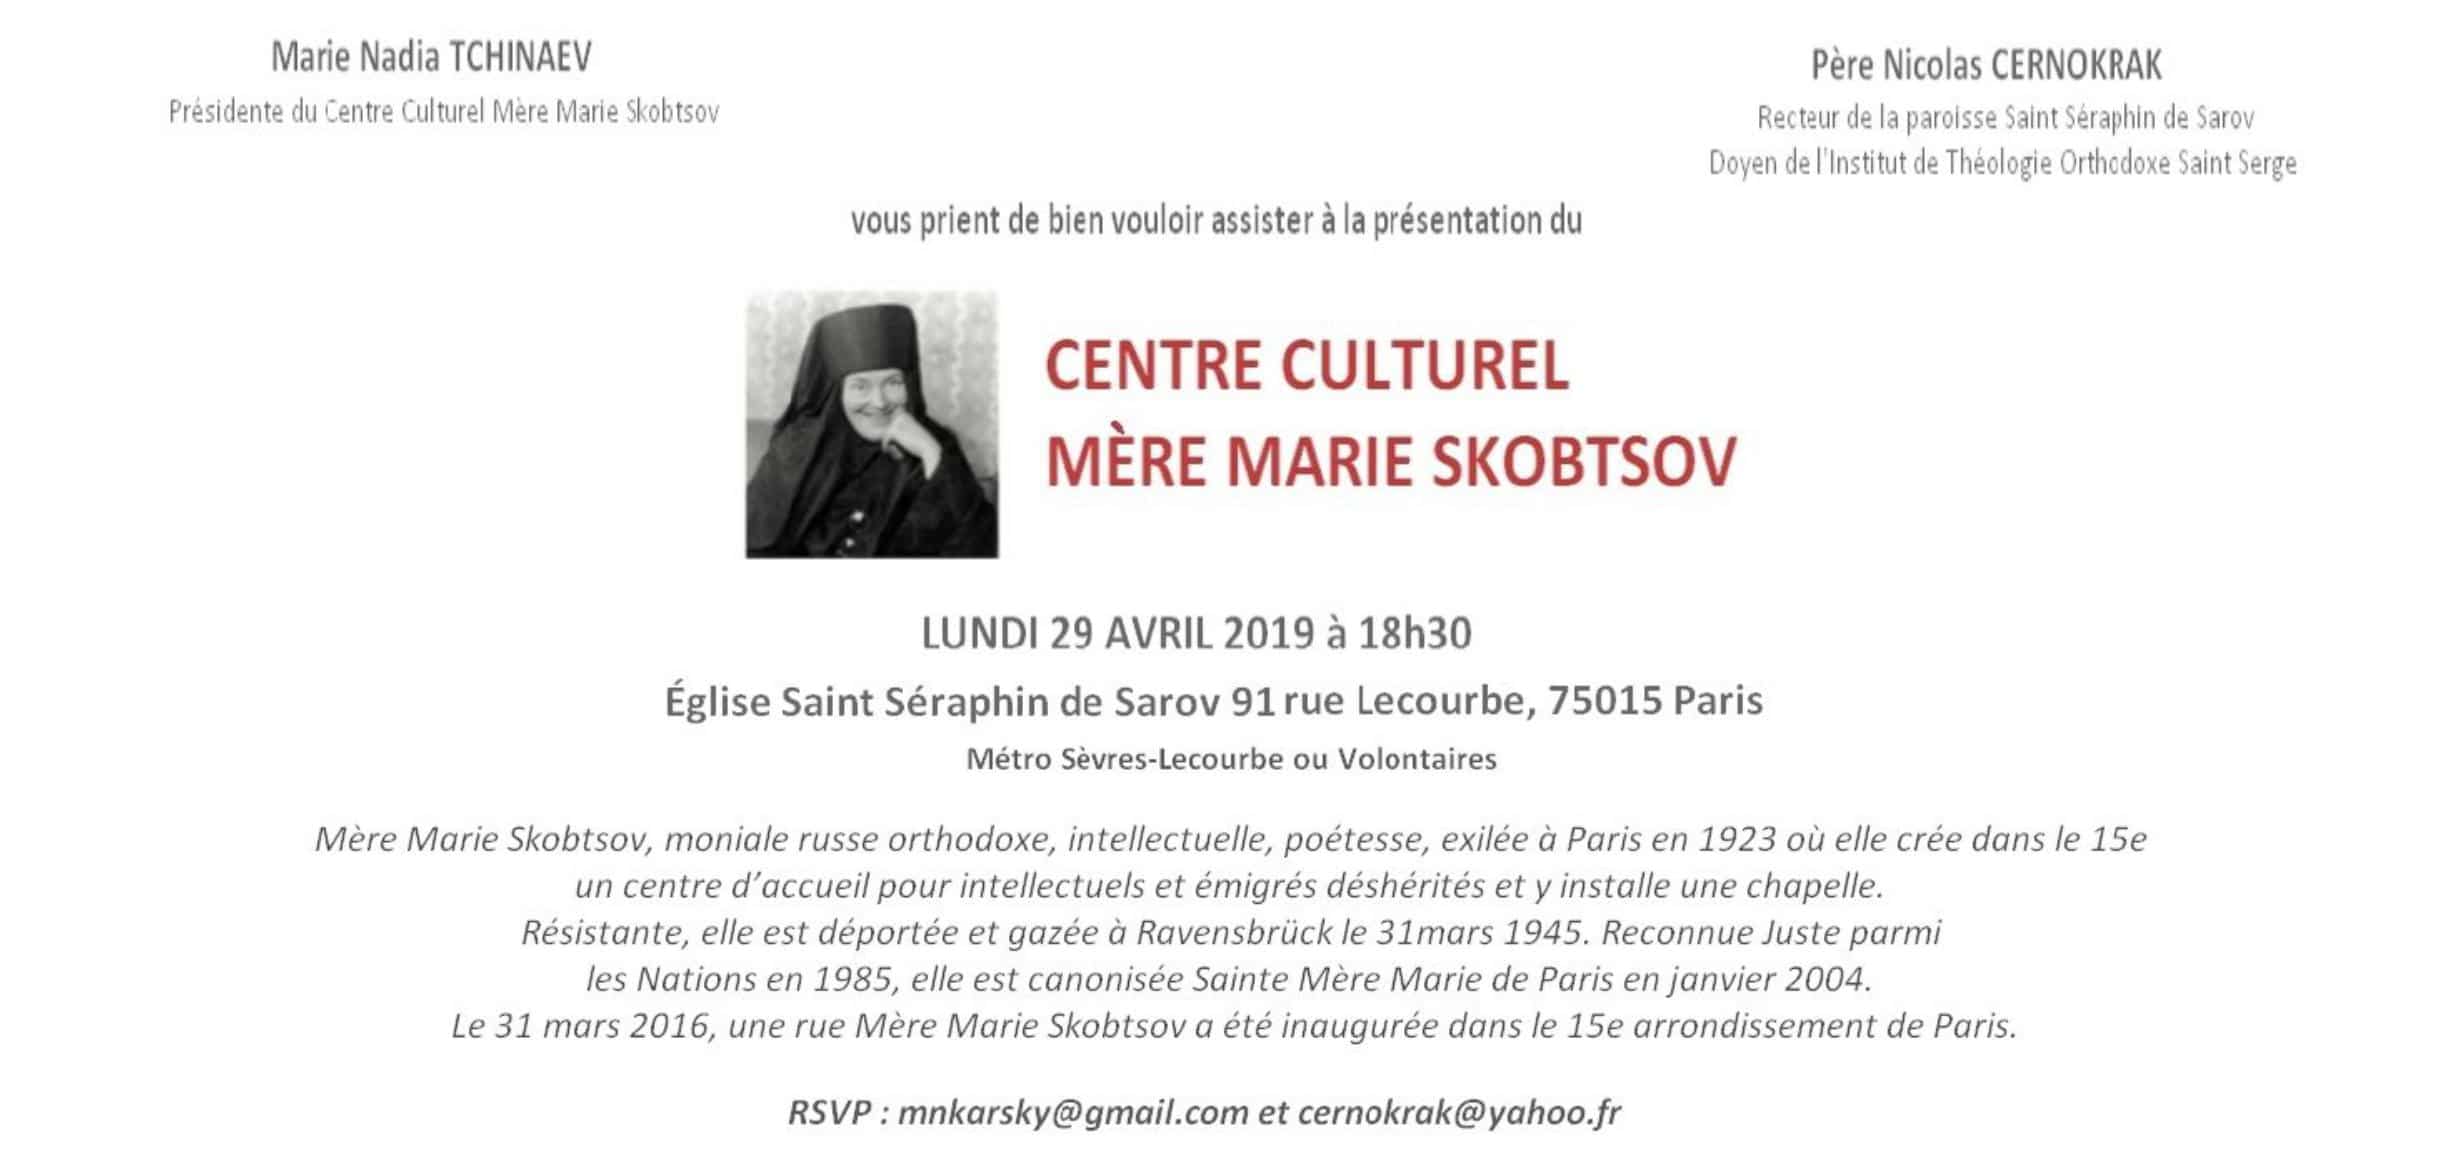 La présentation officielle du centre culturel mère marie skobtsov (paris)